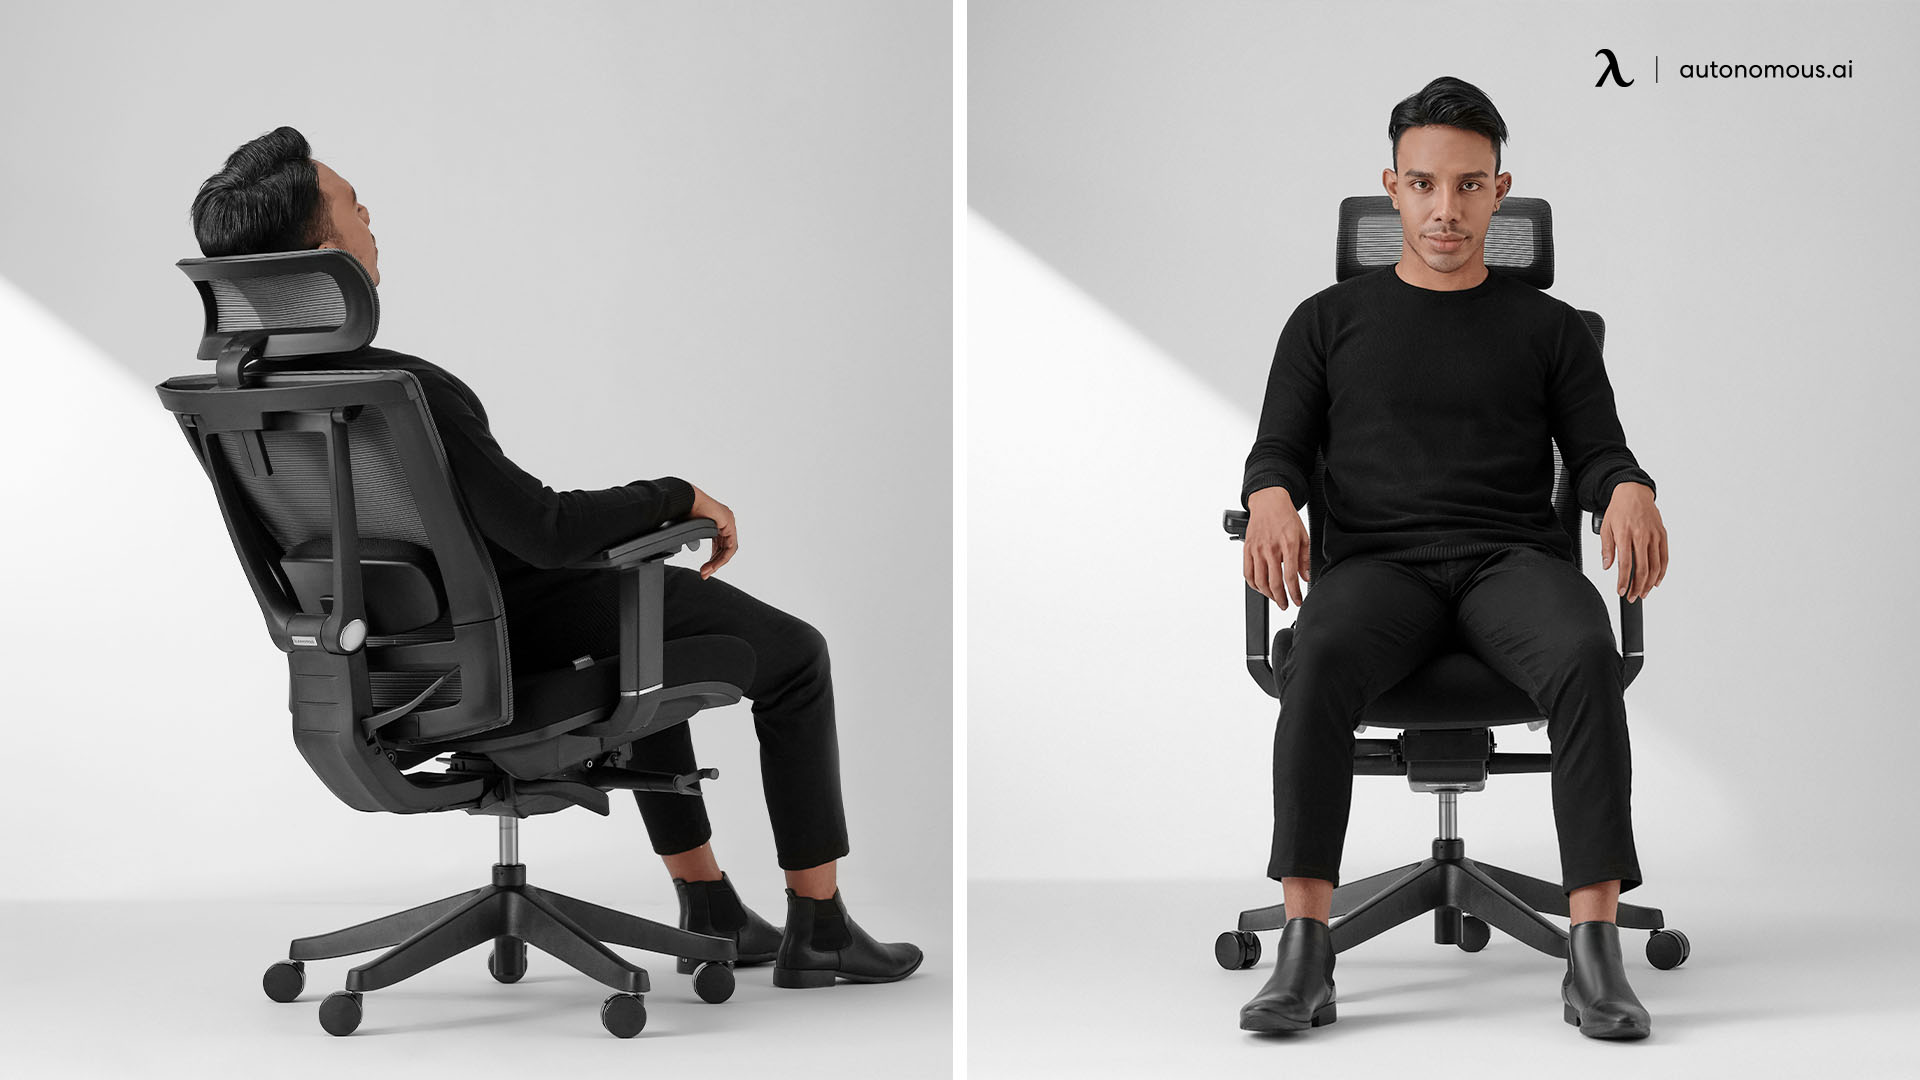 ErgoChair Pro tall adjustable office chair